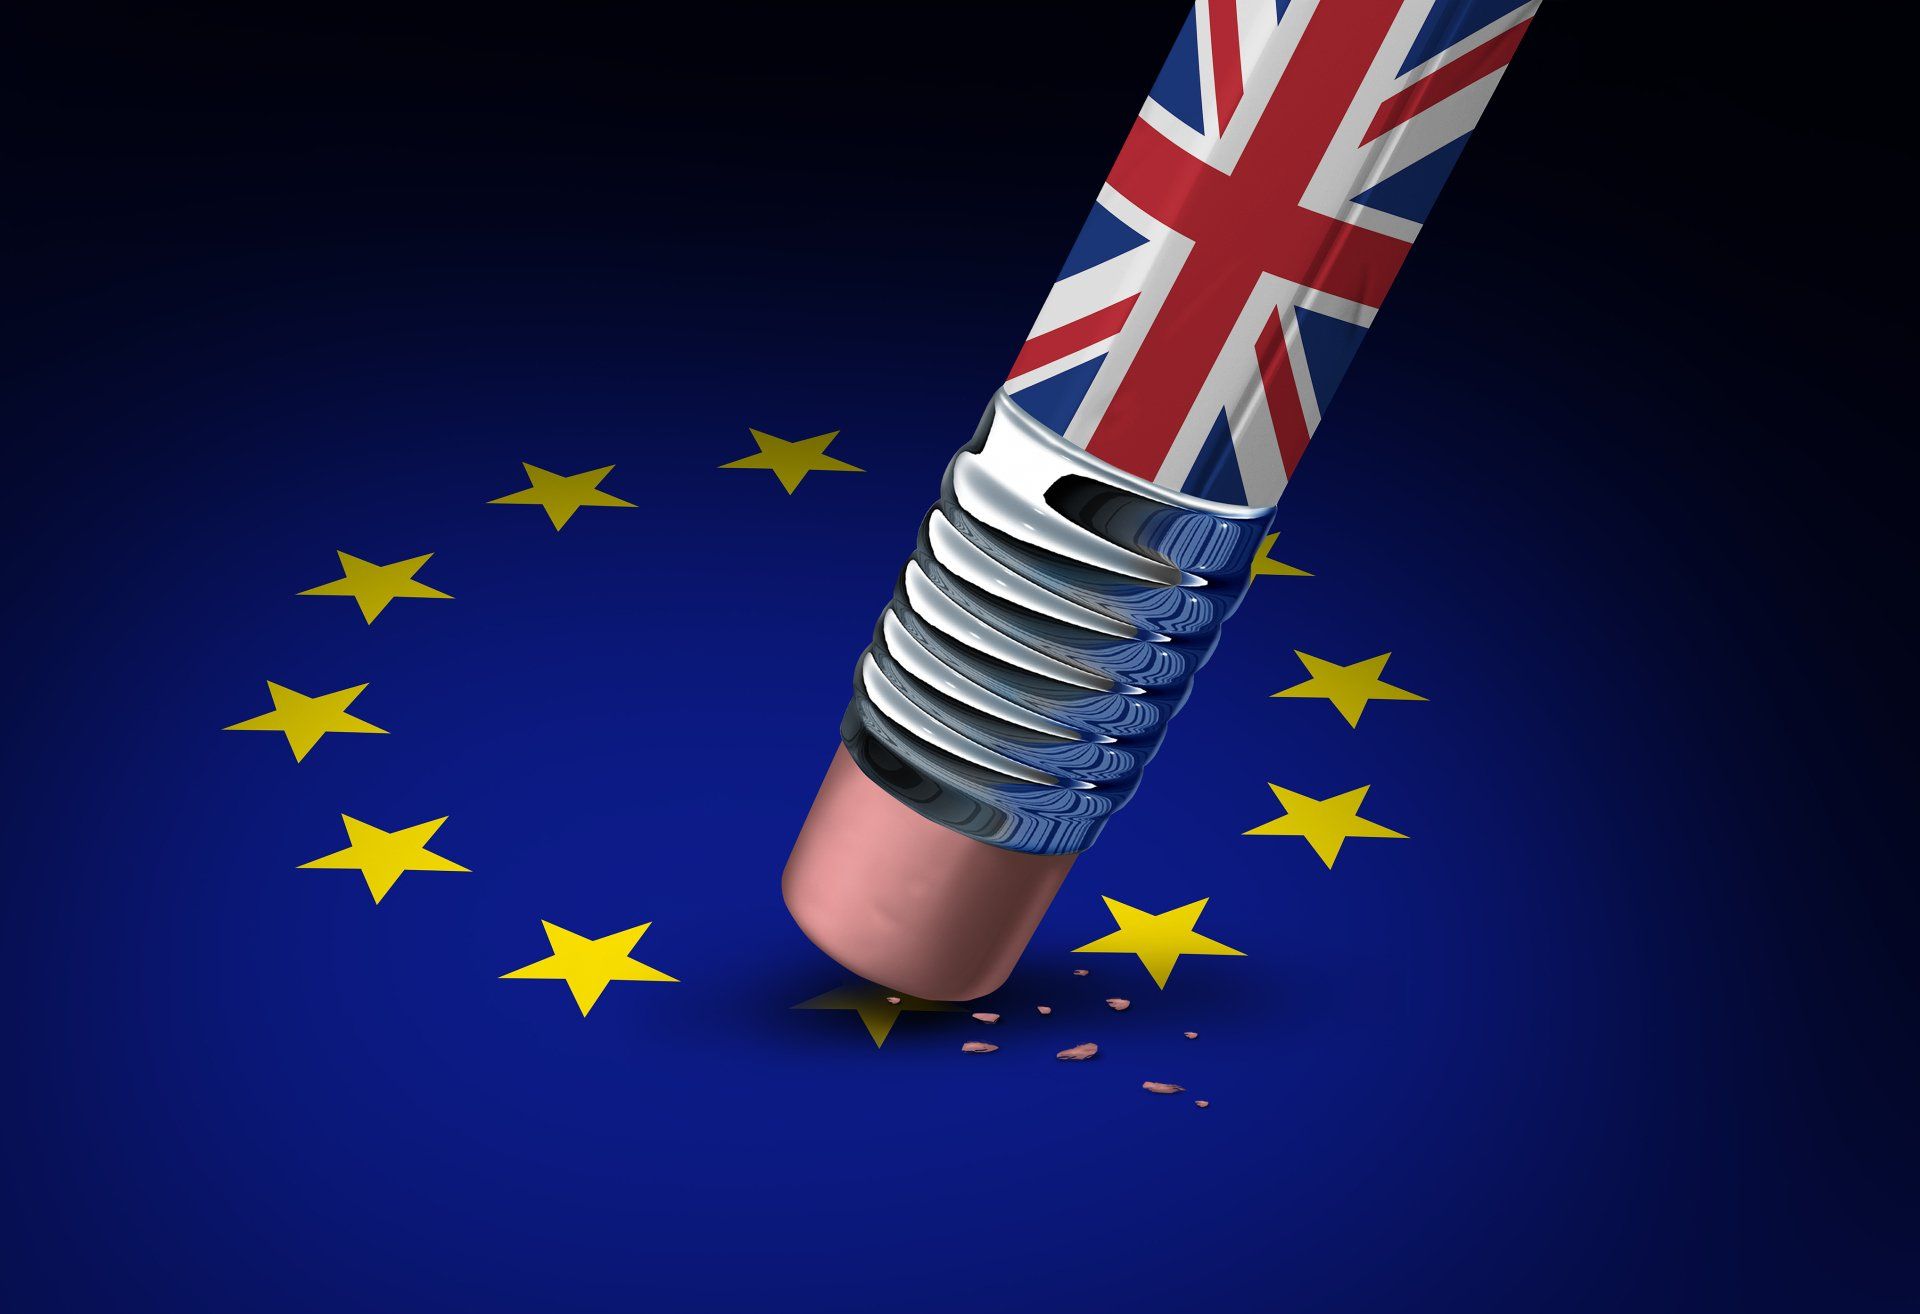 UK Pencil rubbing out an EU star